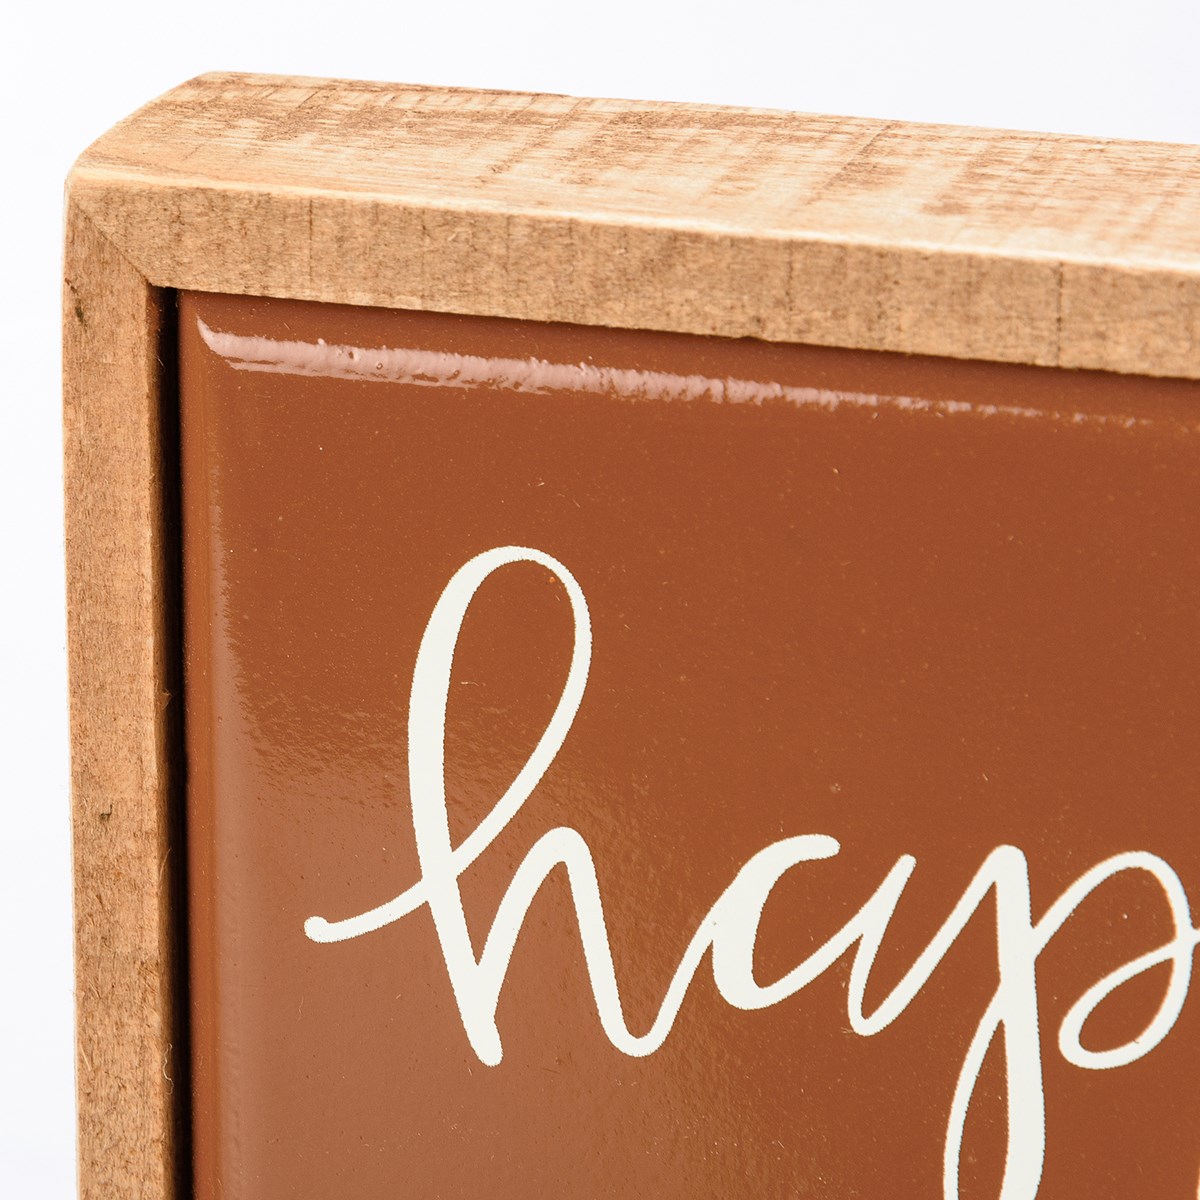 Box Sign Mini - Happy Pumpkin Spice Season - 5" x 5" x 1" - Wood